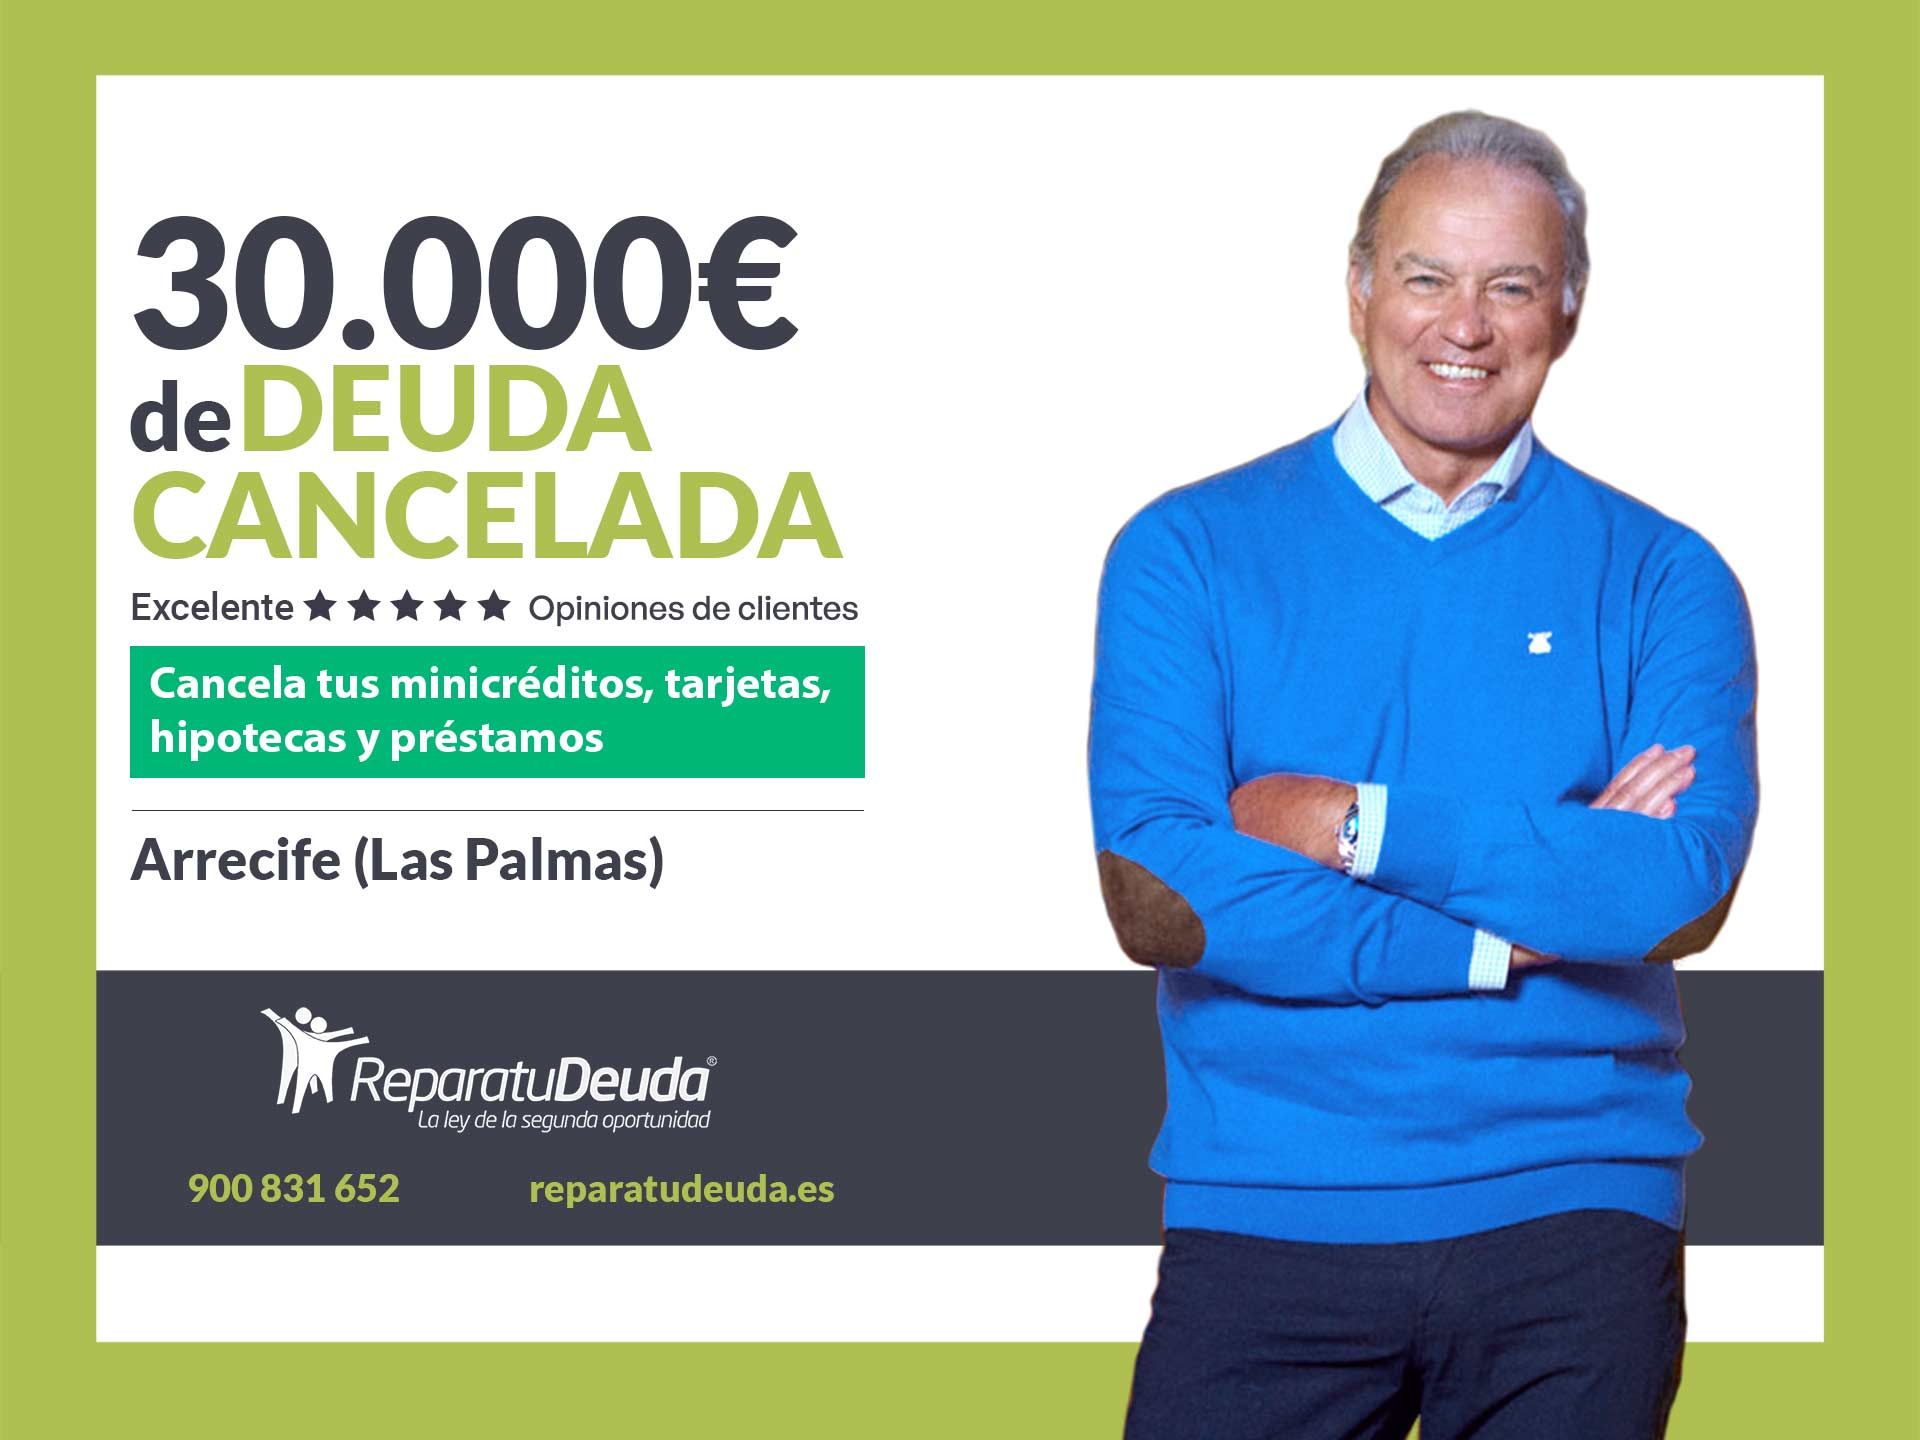 Repara tu Deuda cancela 30.000? en Arrecife (Las Palmas de Gran Canaria) con la Ley de Segunda Oportunidad